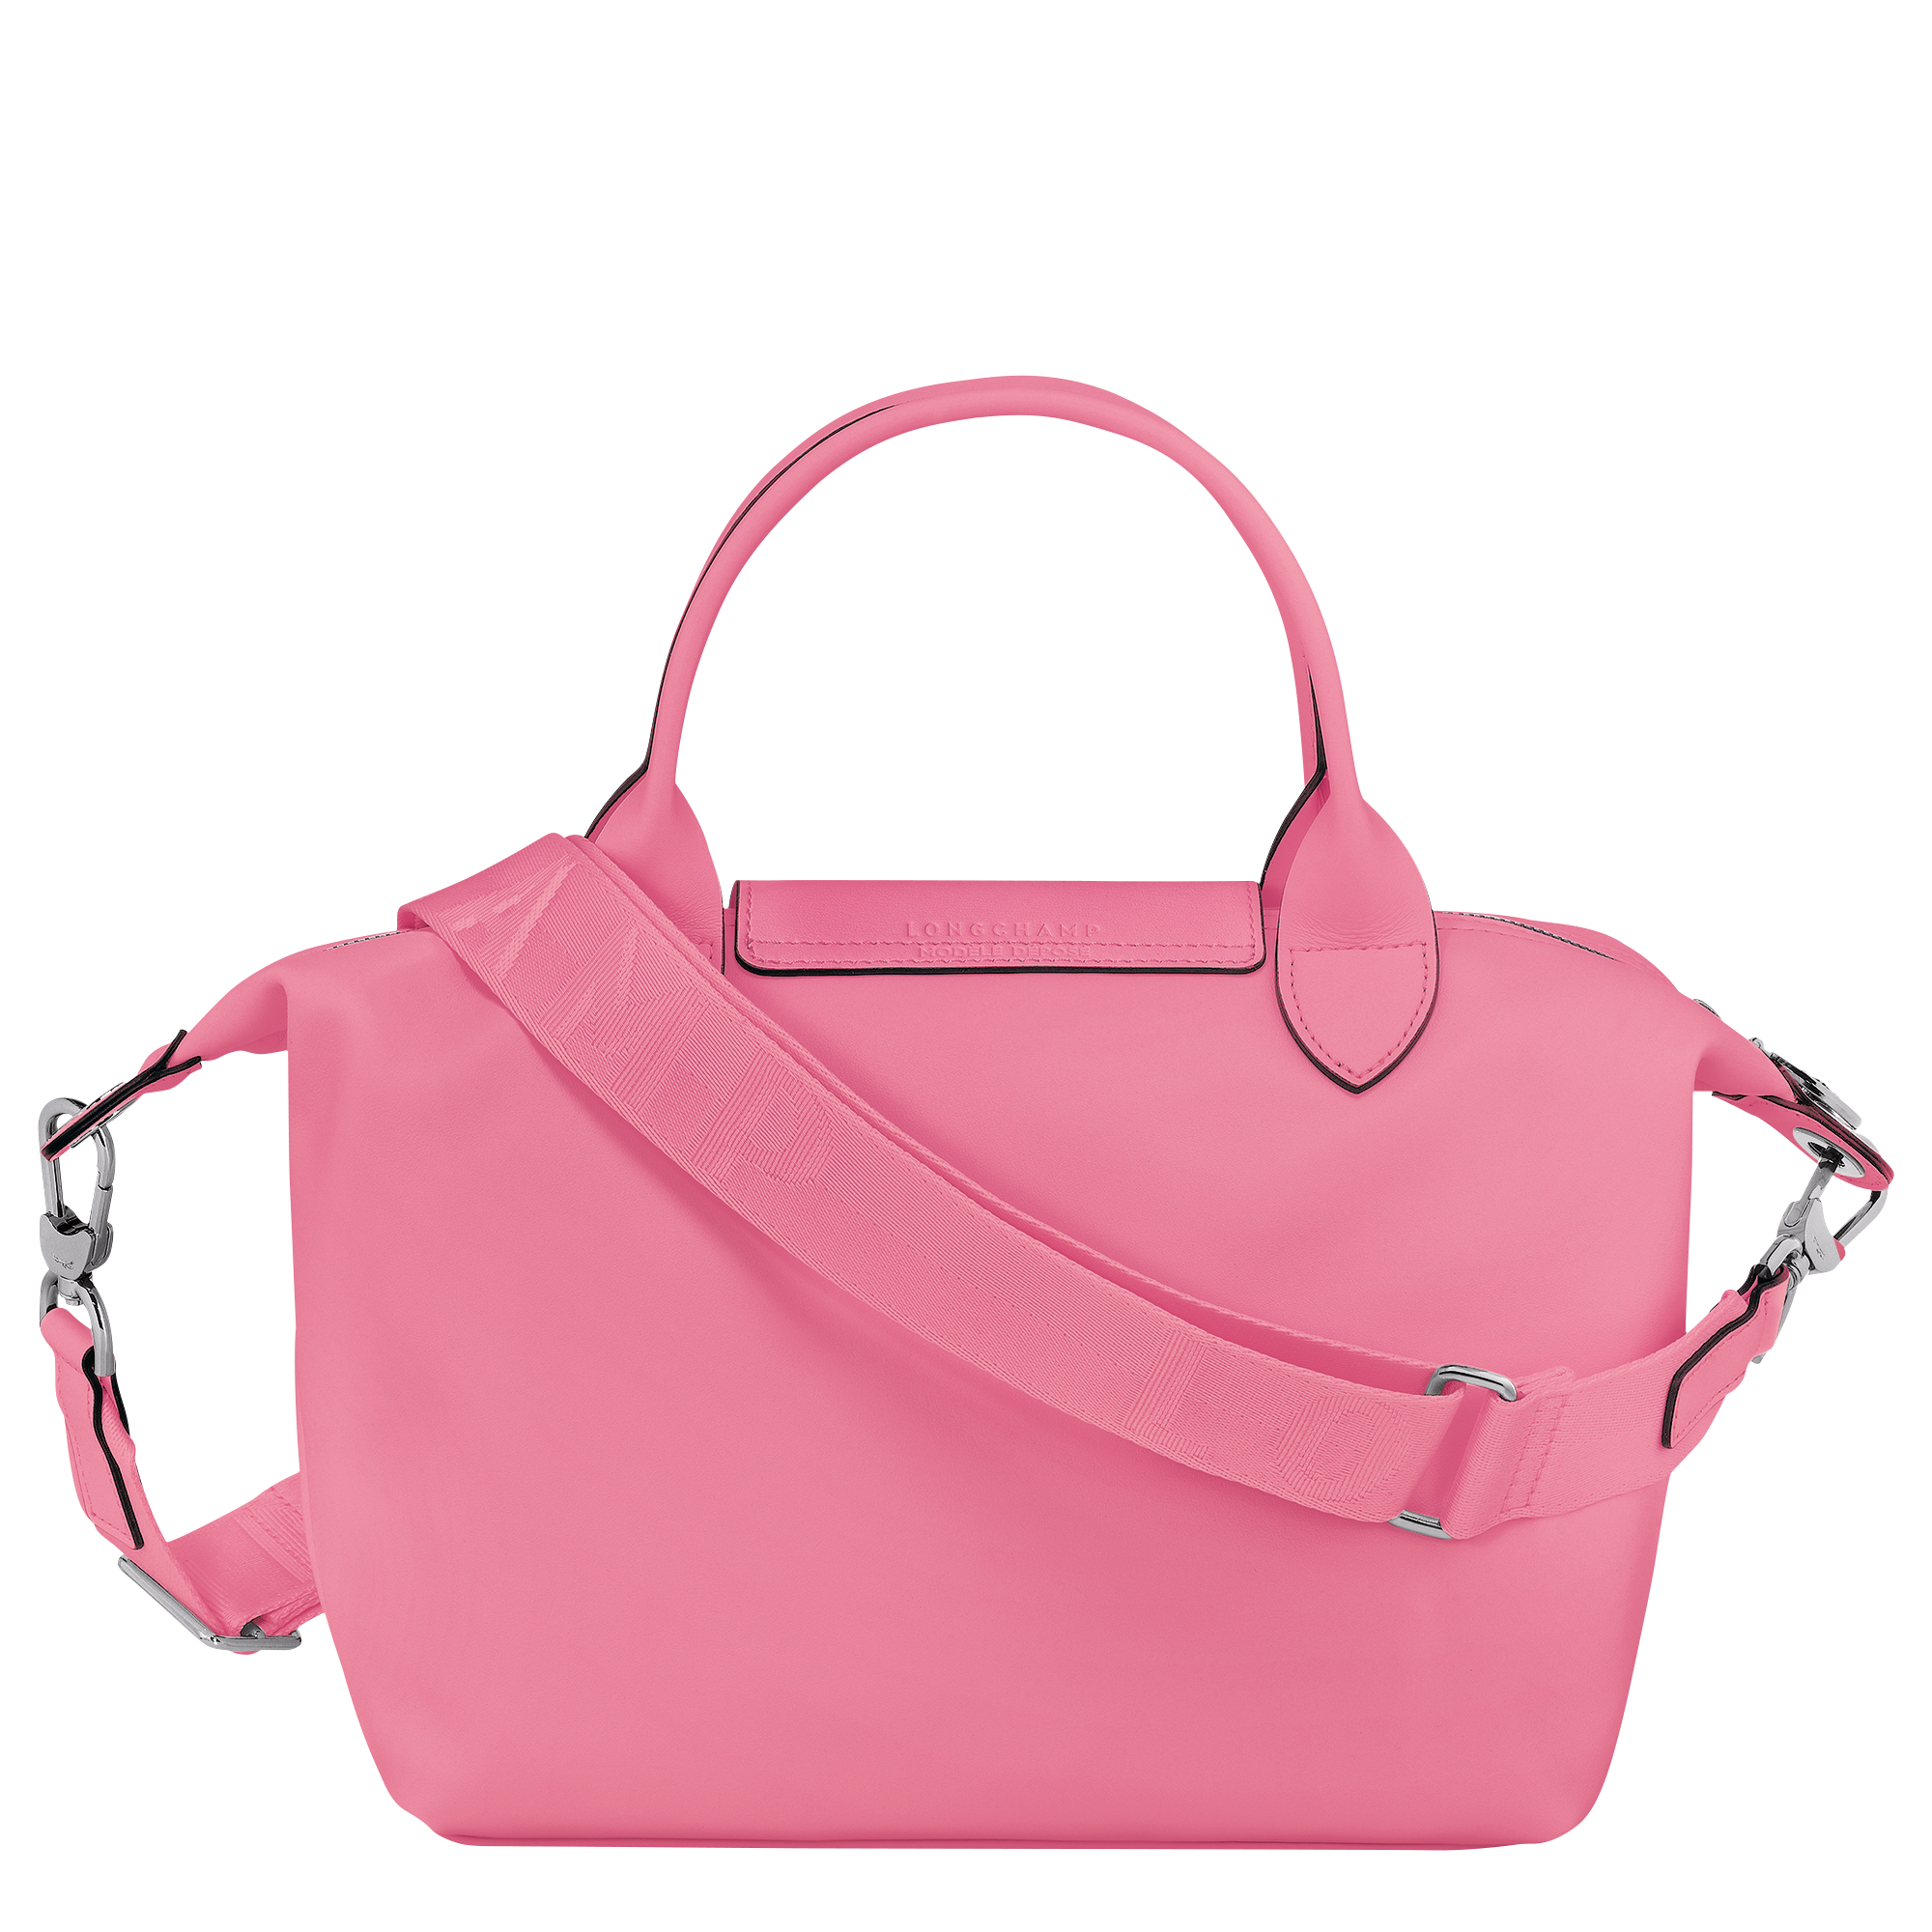 Le Pliage Xtra 手提包 S, 粉紅色